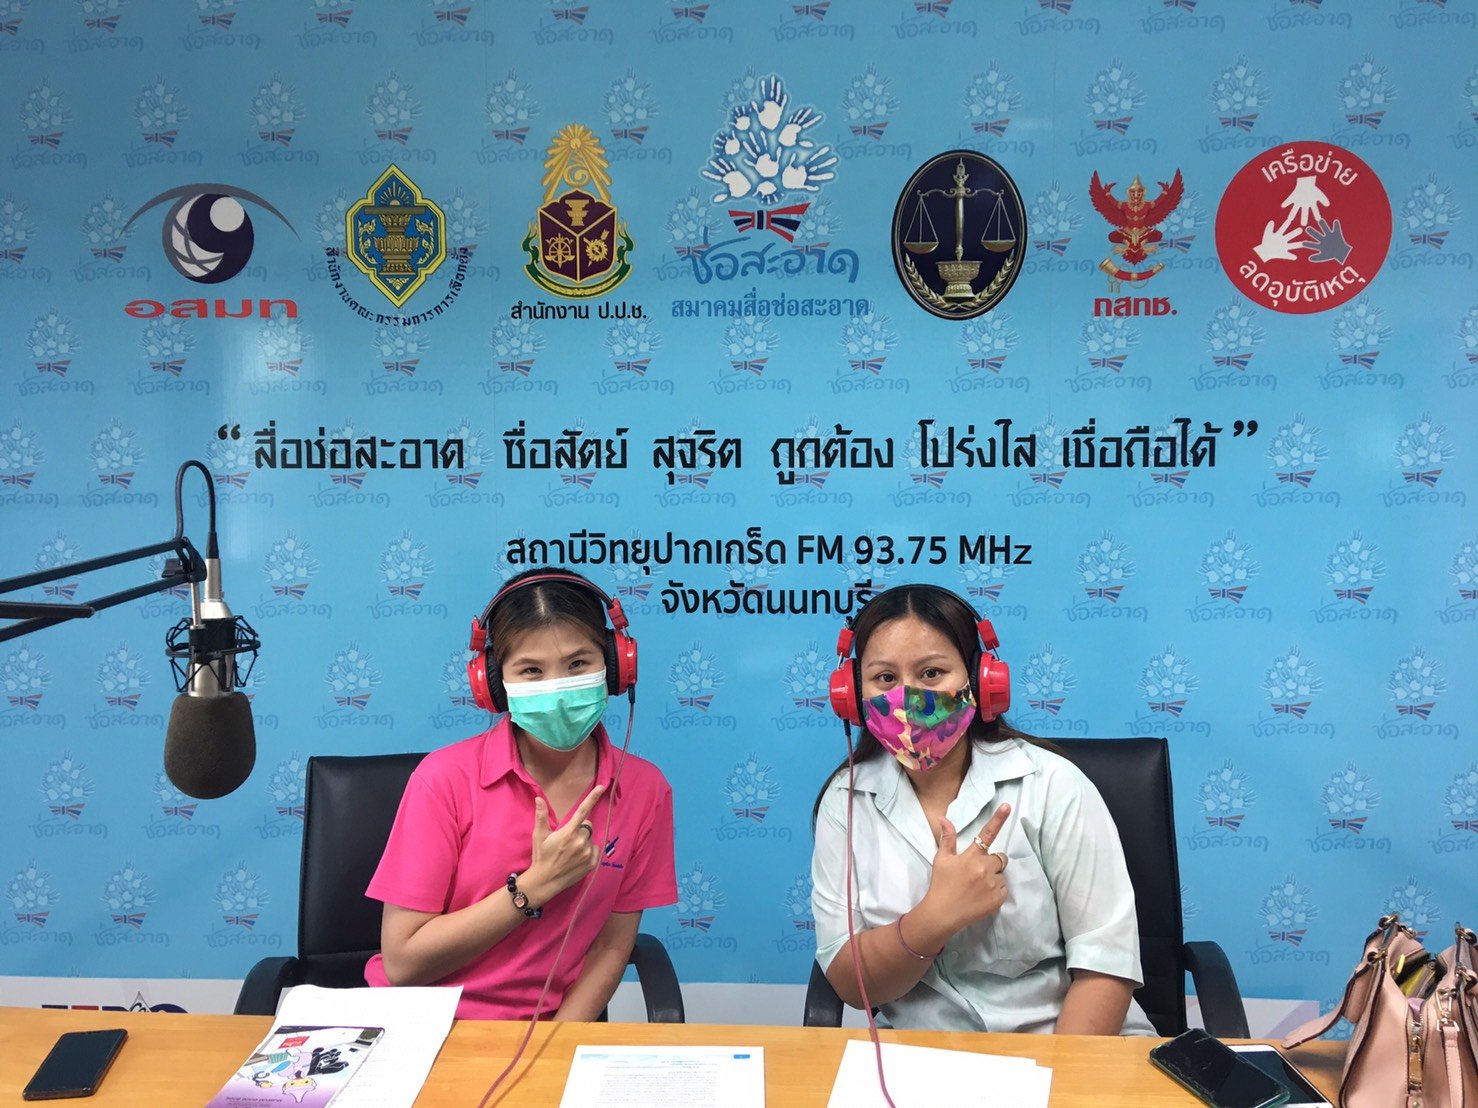 รายการ “คนไทยไม่ทนต่อการทุจริต” วันอาทิตย์ที่ 13 มิถุนายน 2564 เวลา 18.30-19.00 น.